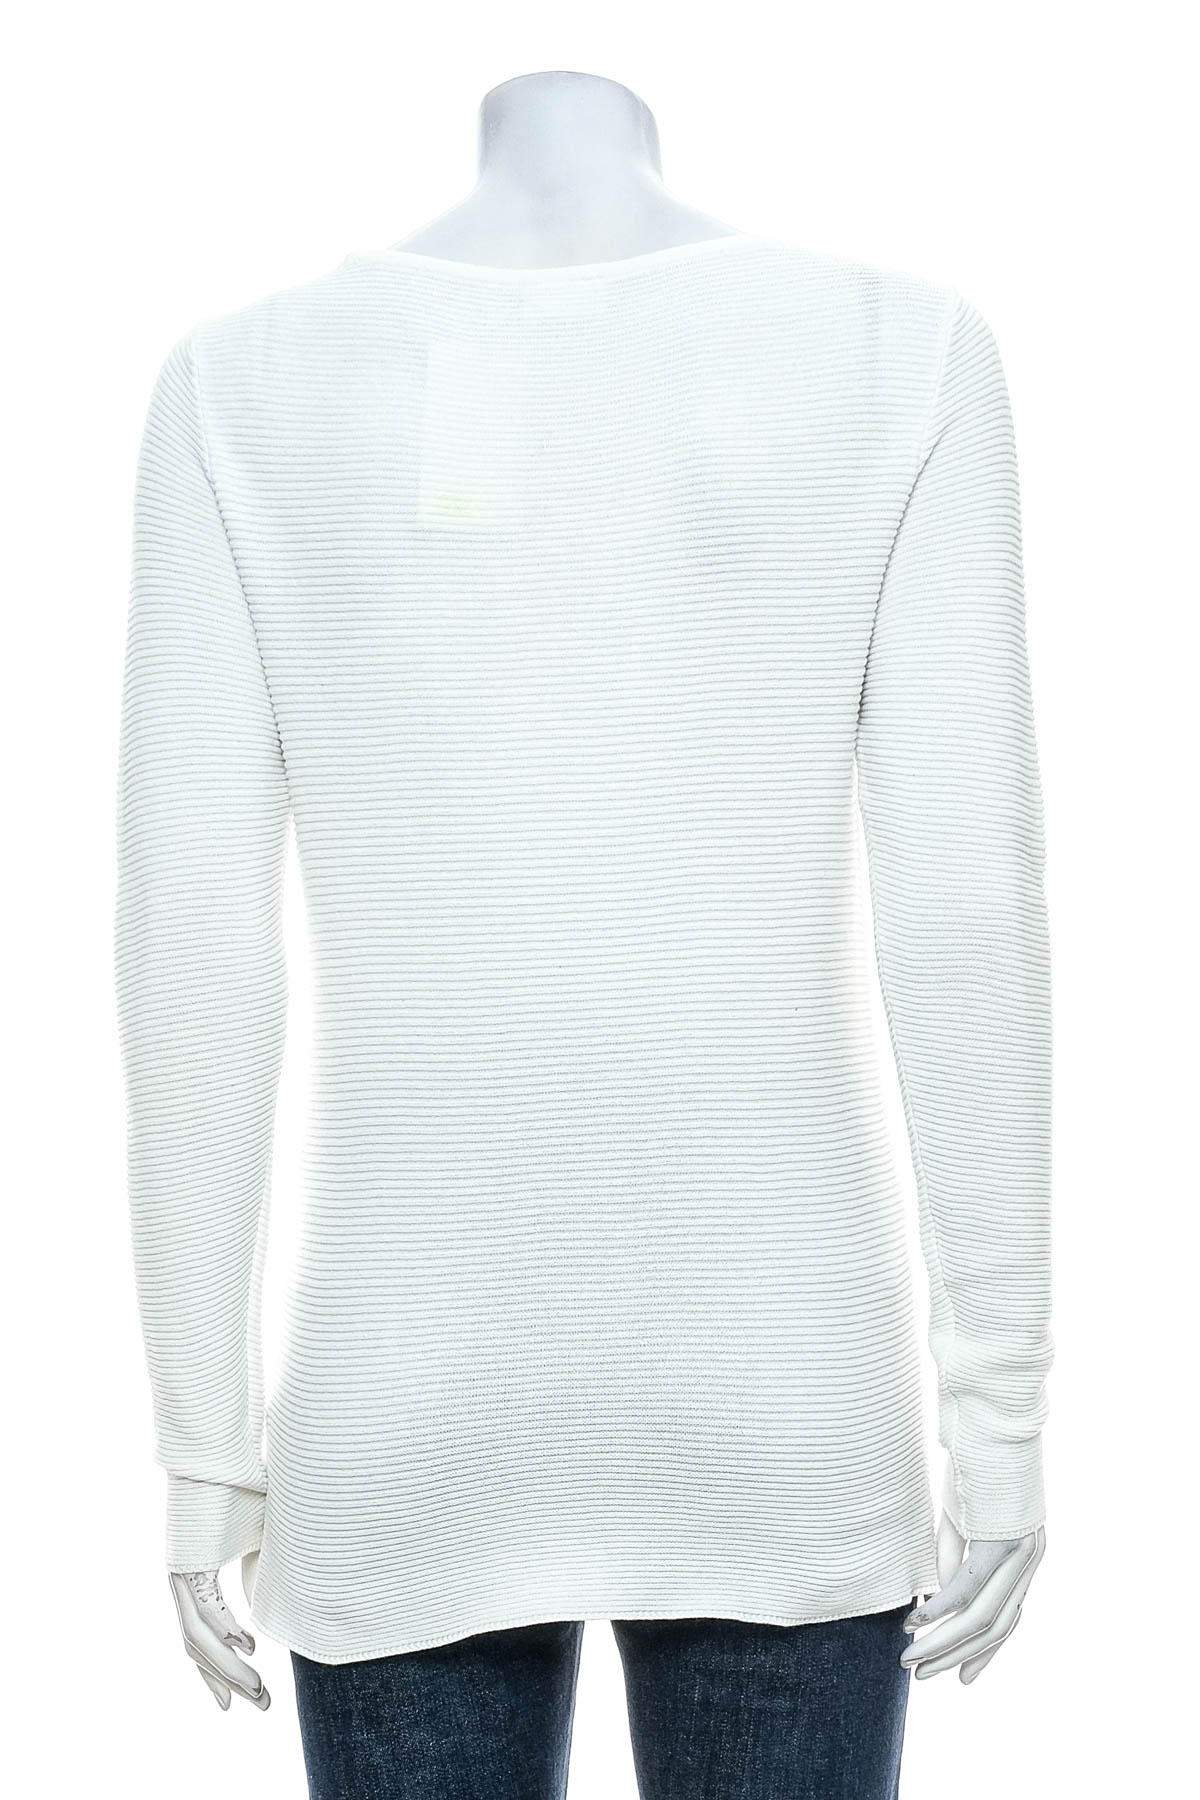 Women's sweater - VILA - 1